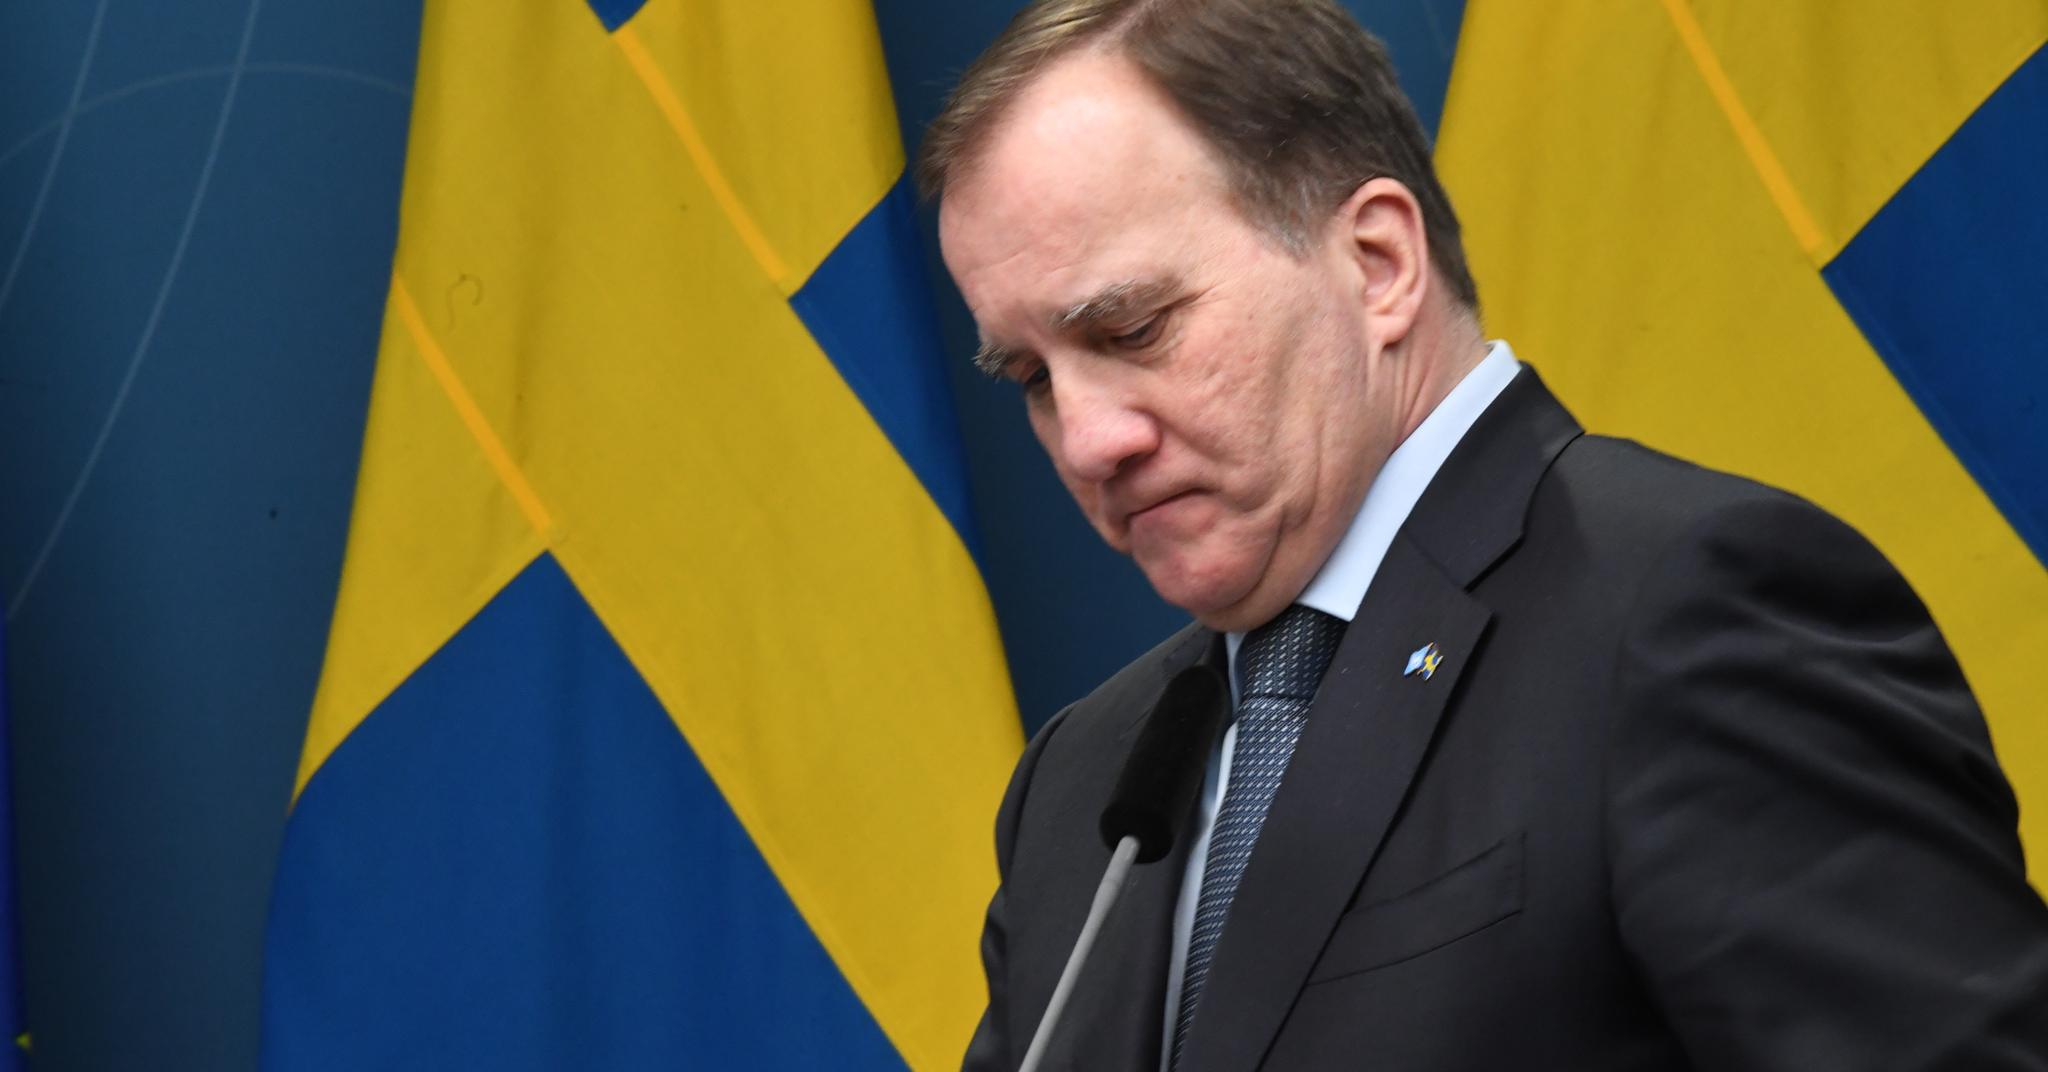 Statsminister Stefan Löfven fotografert på et pressetreff i begynnelsen av januar etter at den svenske Riksdagen vedtok en ny, midlertidig pandemilov.